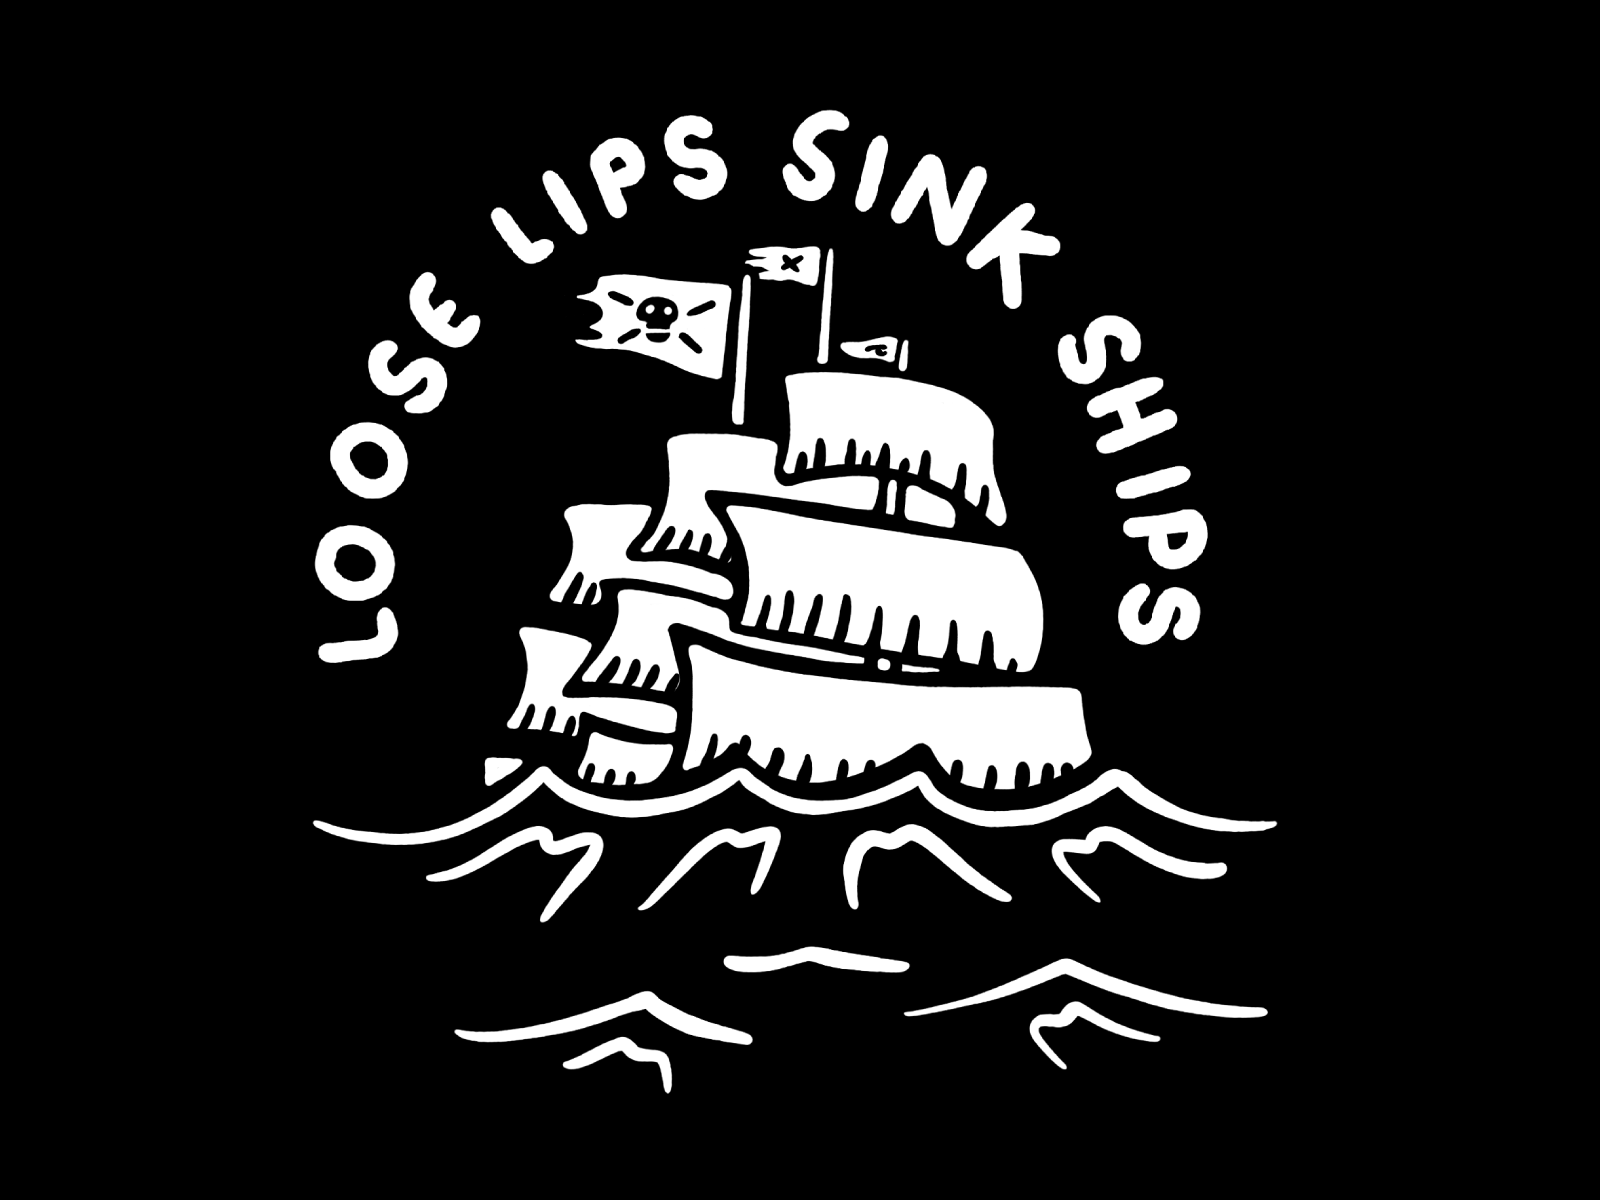 Loose lips sink ships by Luke Etho on Dribbble